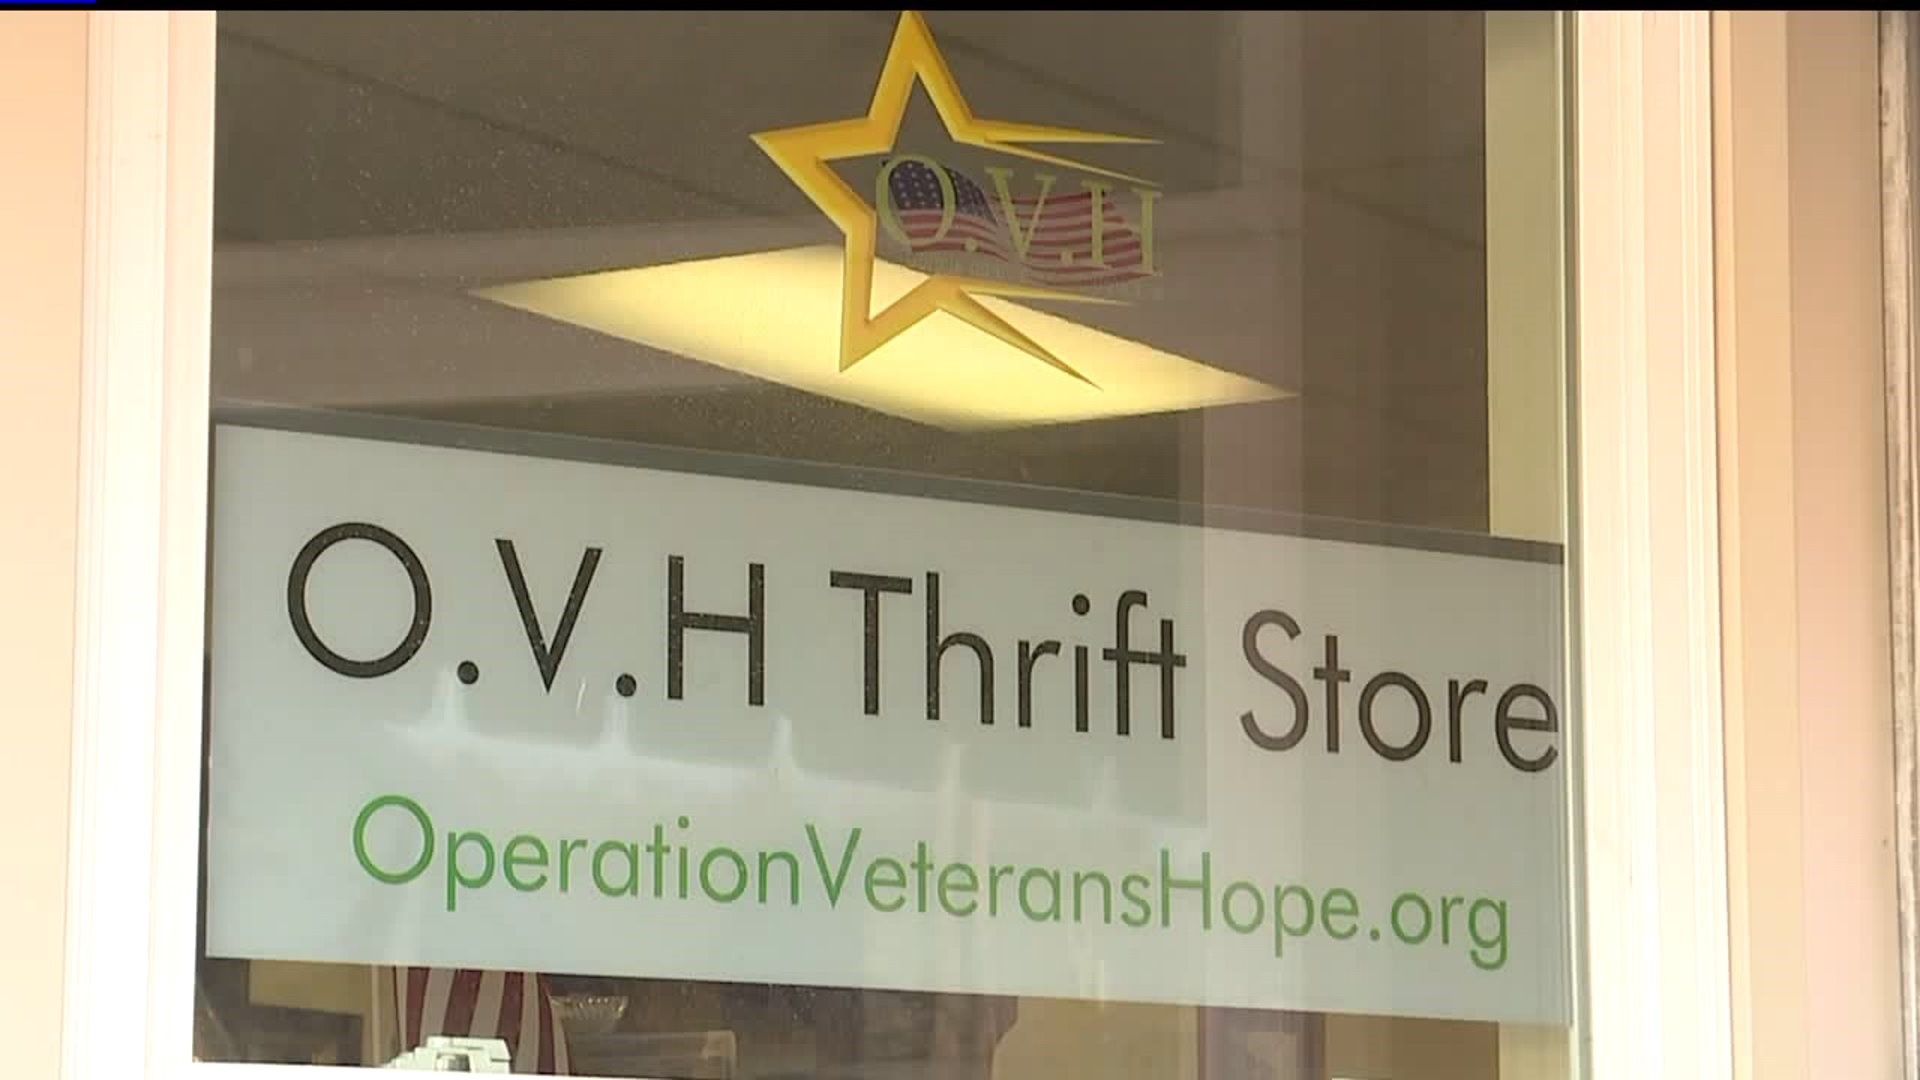 Operation Veterans Hope helps homeless veterans